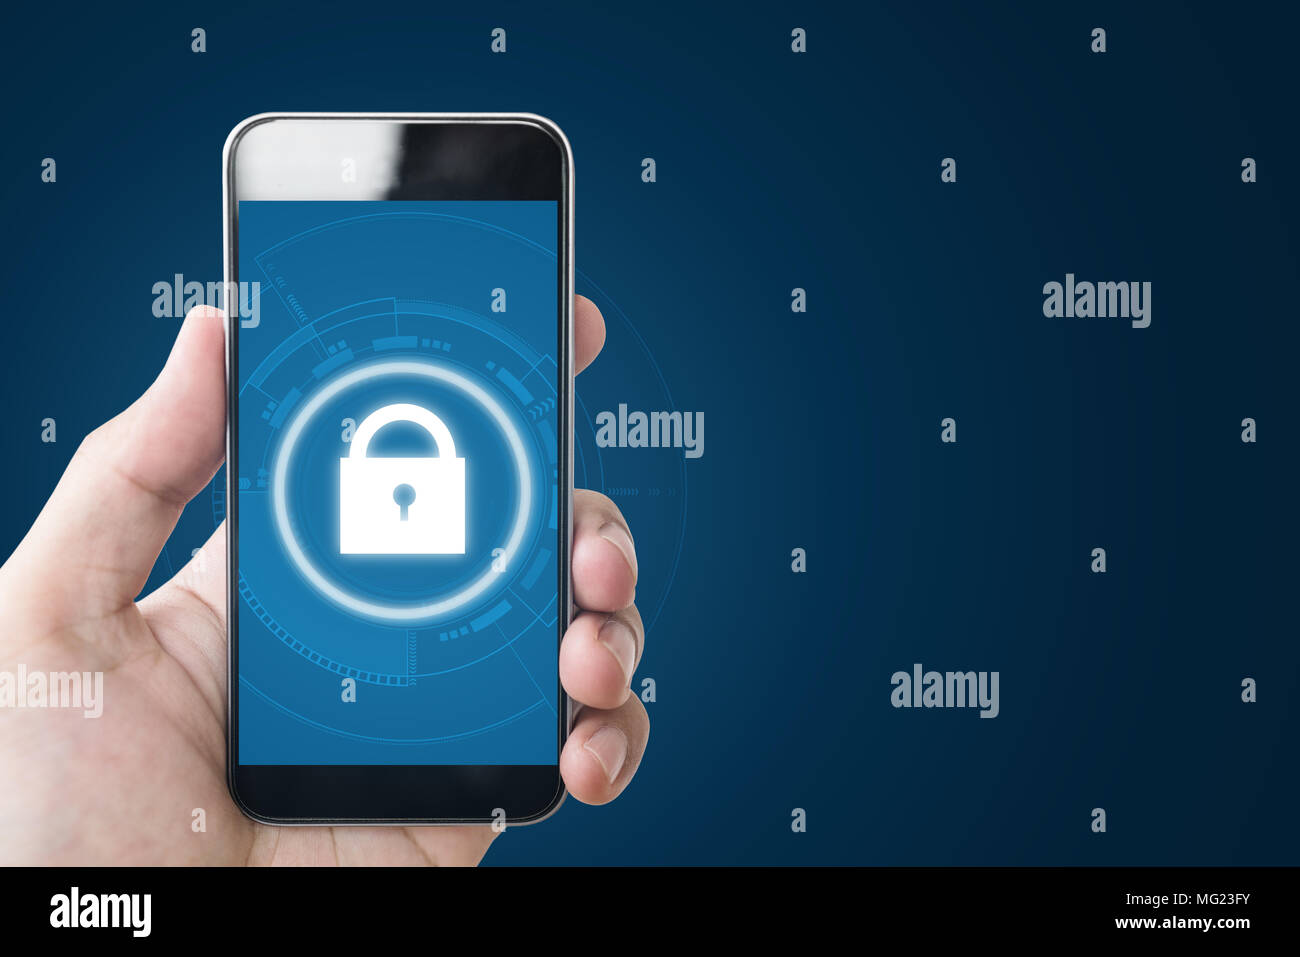 Internet Sicherheit und Mobile Security Technology System. Hand, smart phone mit Schlosssymbol. auf blauem Hintergrund mit Kopie Raum Stockfoto